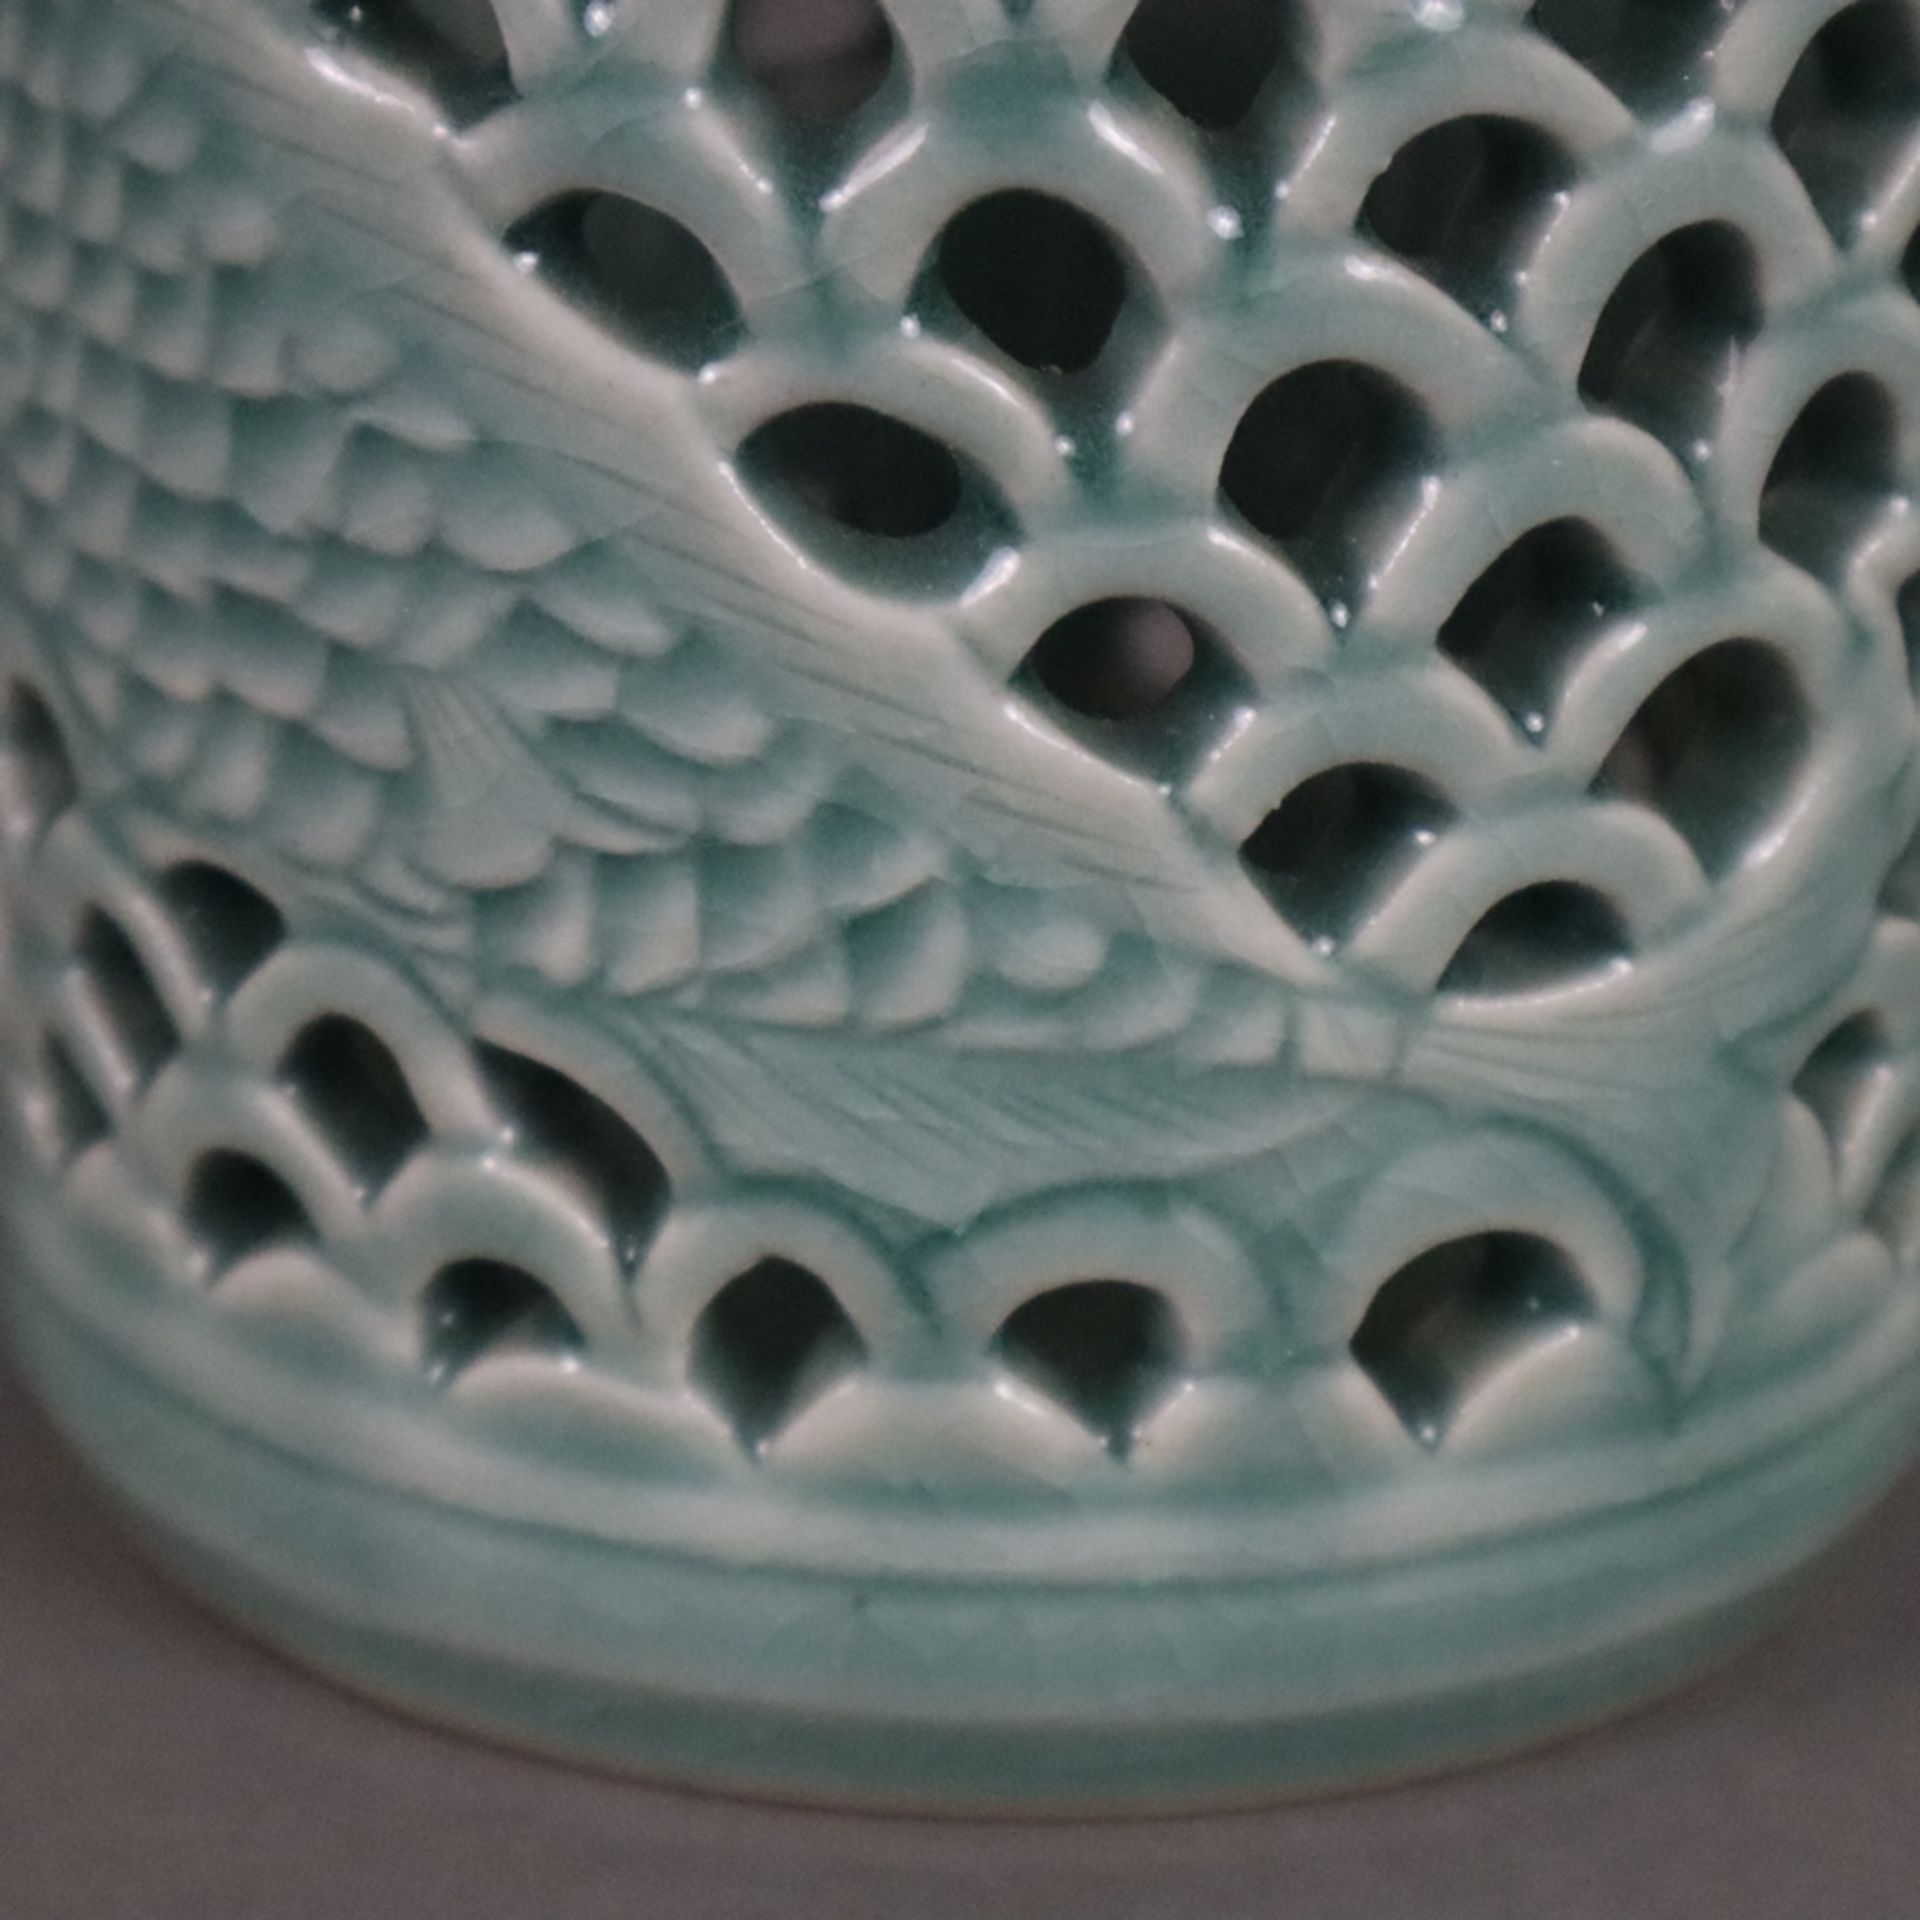 Pinselbecher - China, 20. Jh., Keramik mit bläulicher Glasur, zylindrische Wandung umlaufend mit We - Bild 3 aus 6